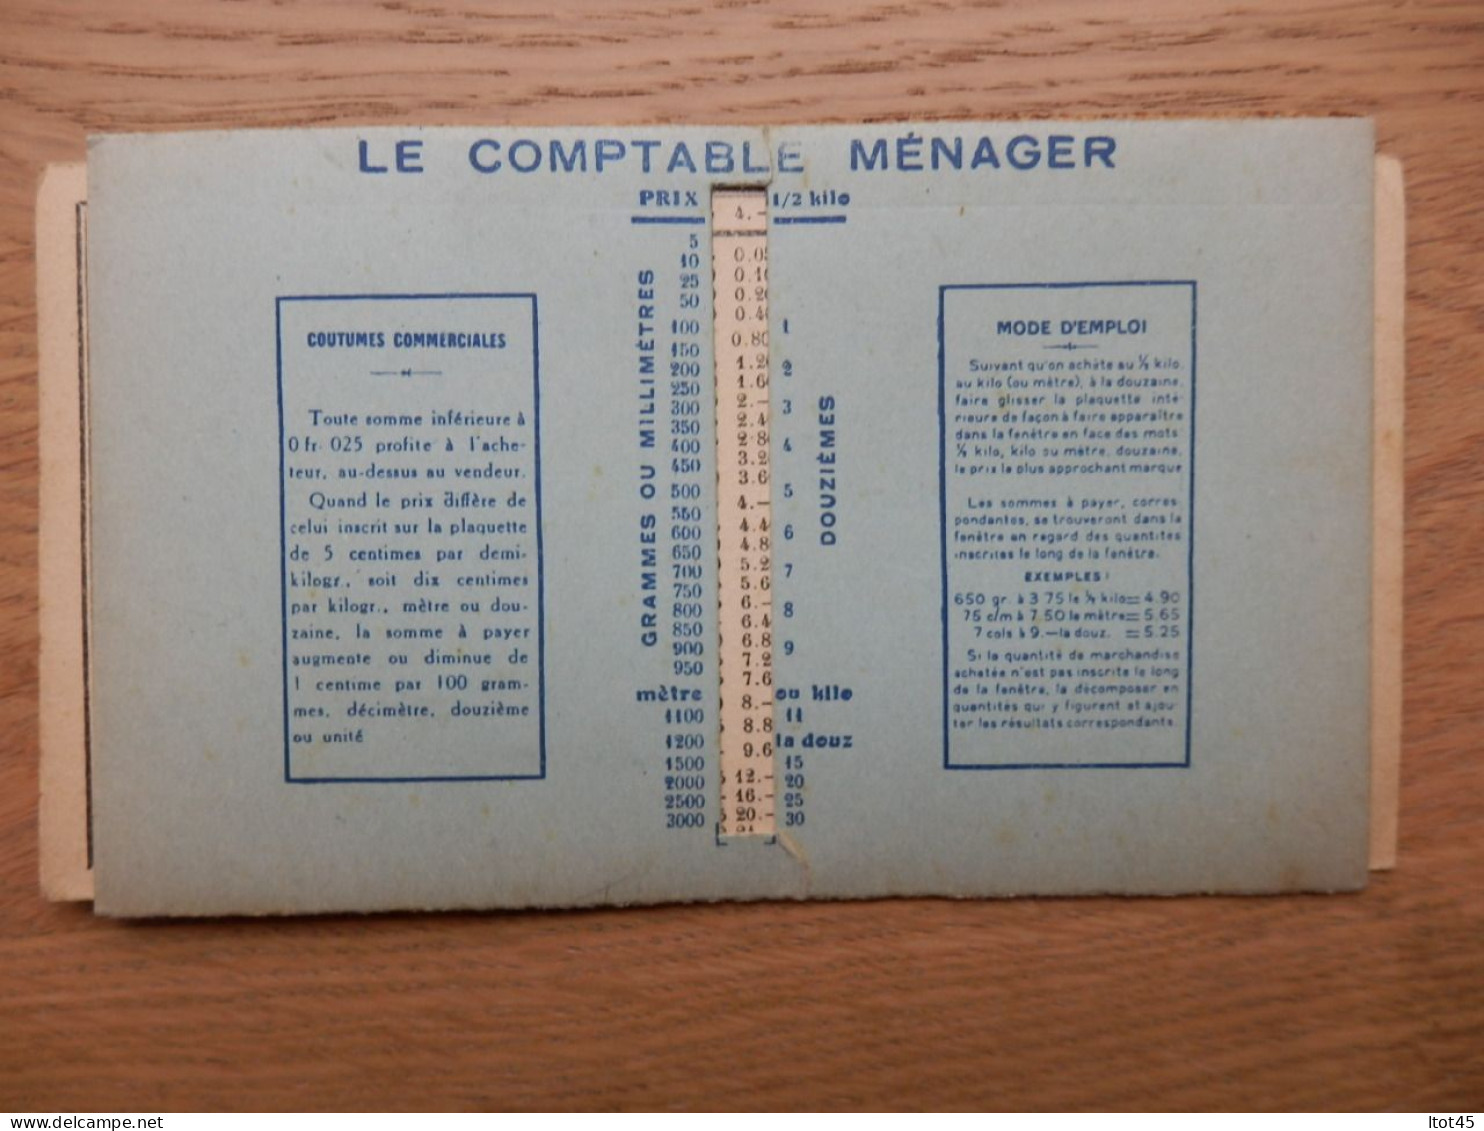 CARTE LE COMPTABLE MENAGER MEDAILLE DE VERMEIL CONCOURS LEPINE 1925 - Supplies And Equipment